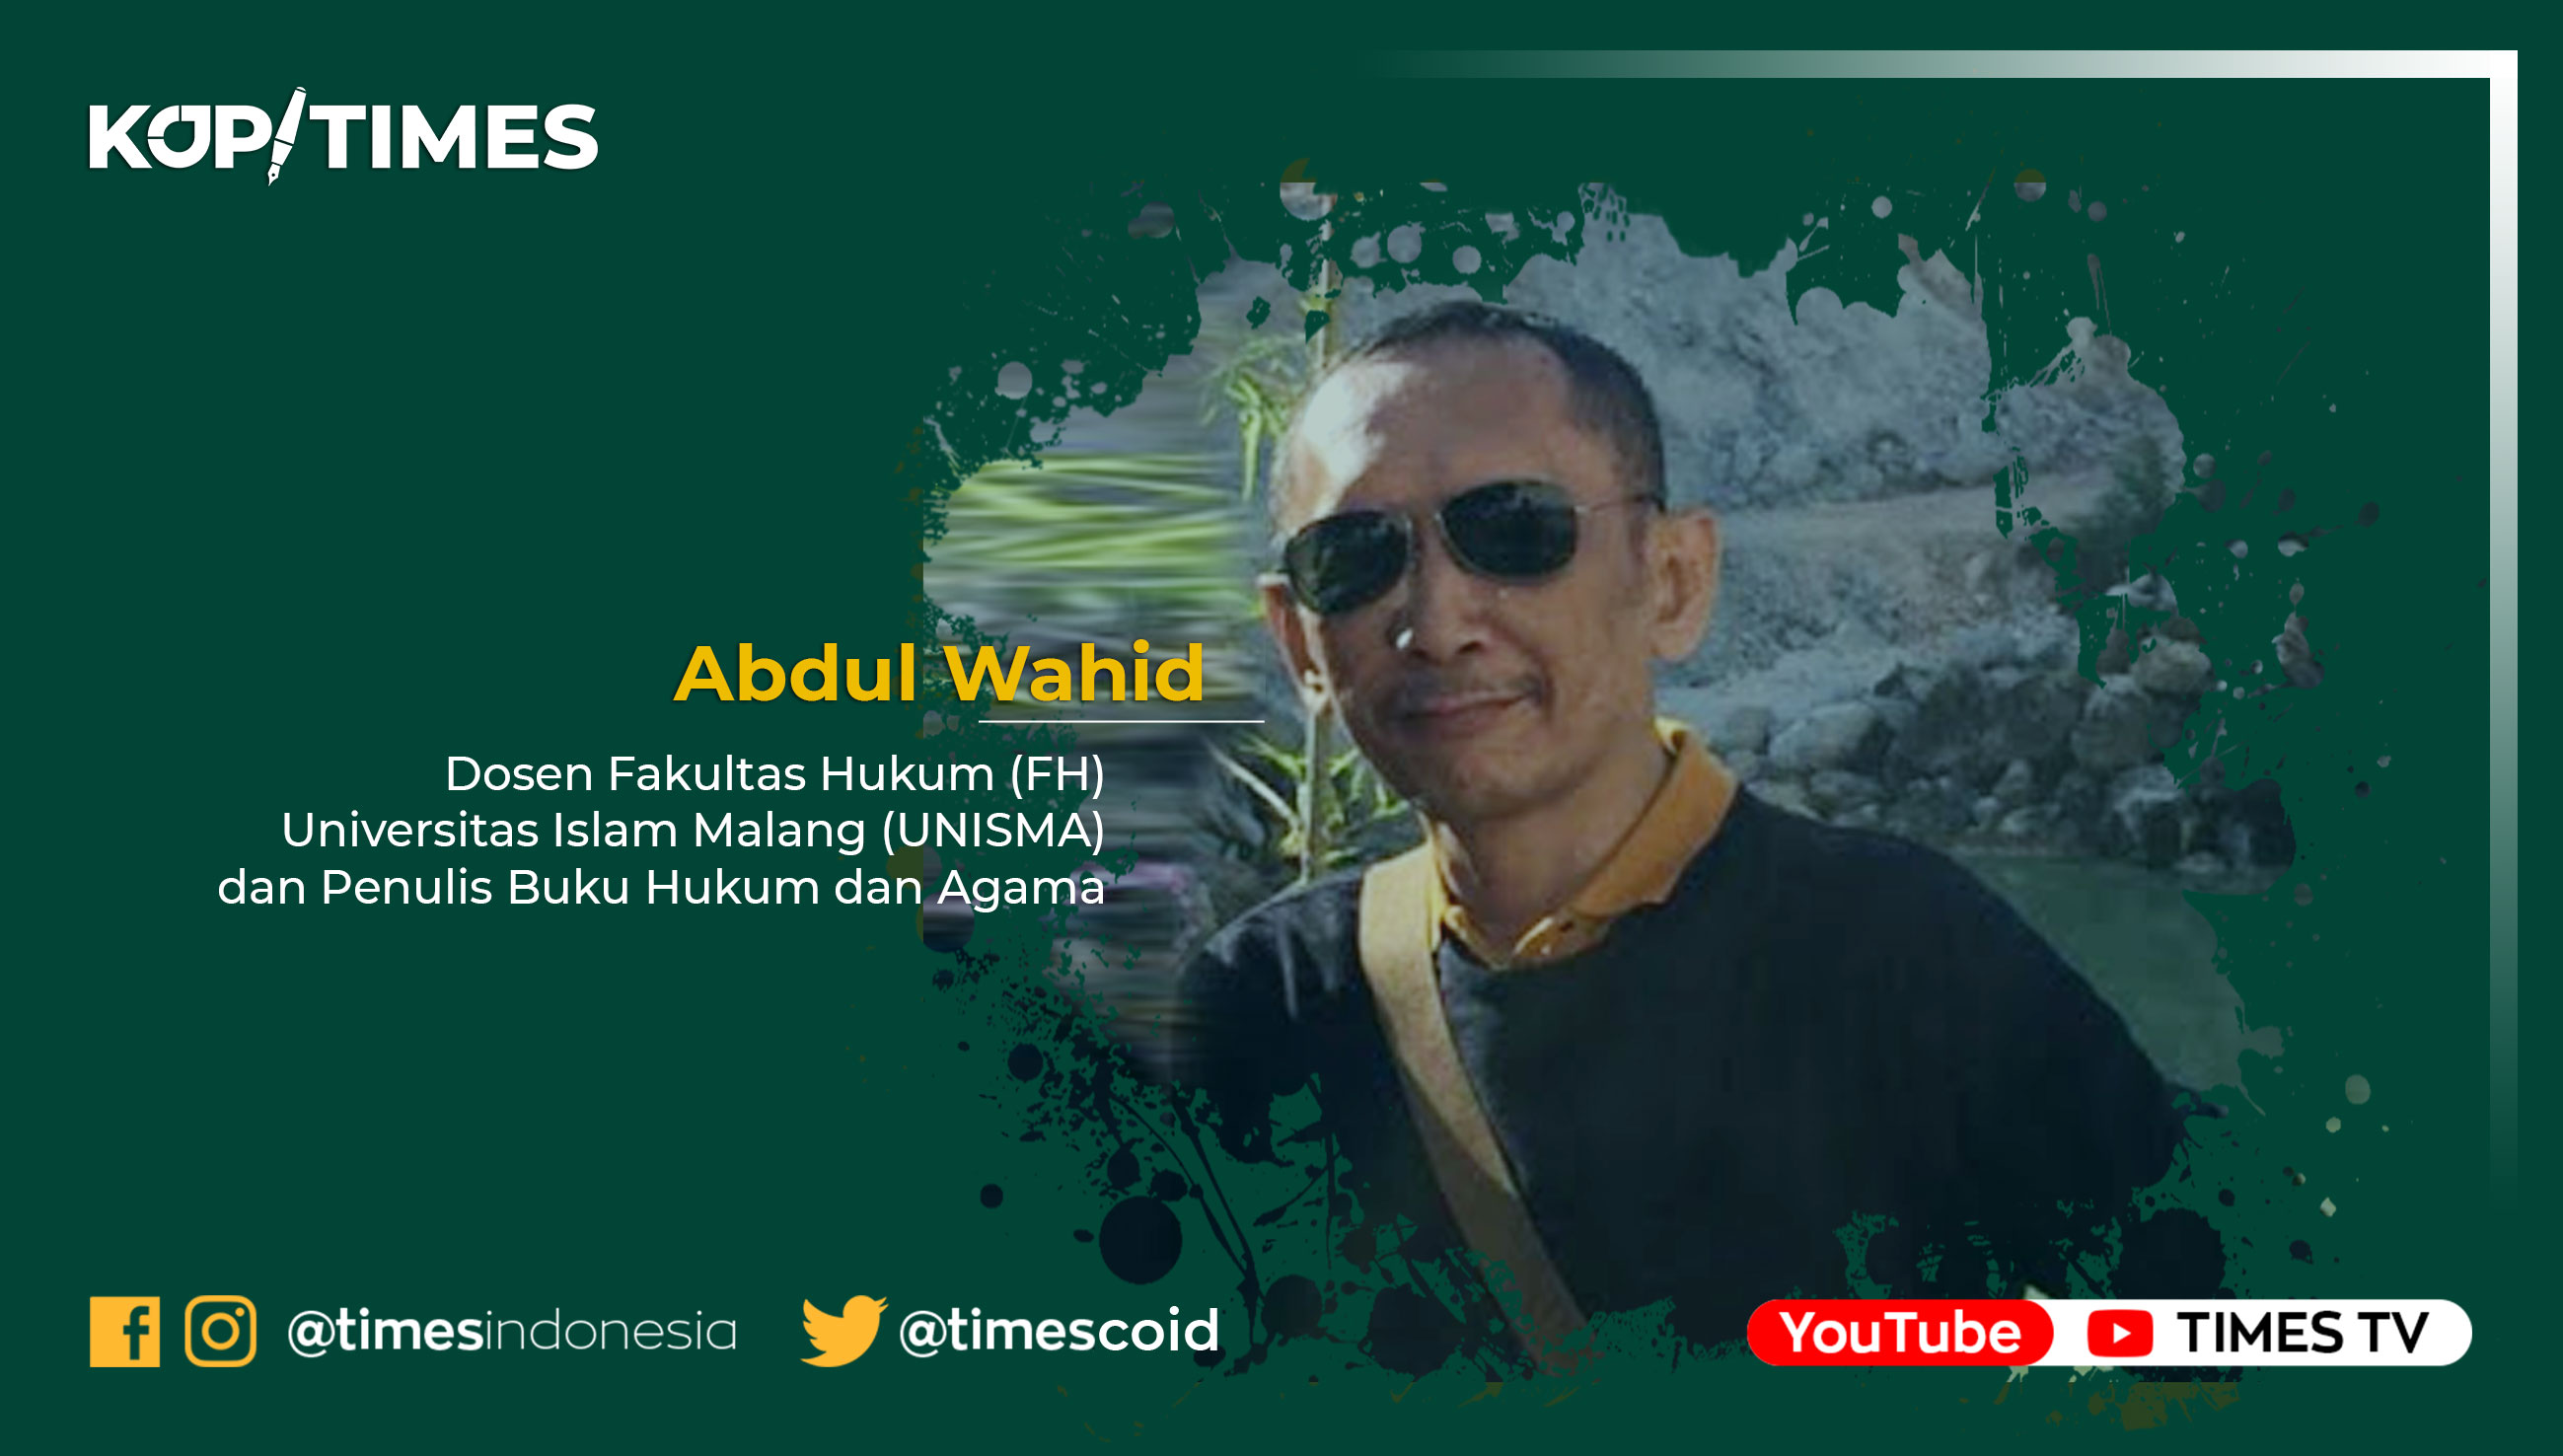 Abdul Wahid, Dosen Fakultas Hukum (FH) Universitas Islam Malang (UNISMA) dan Penulis Buku Hukum dan Agama